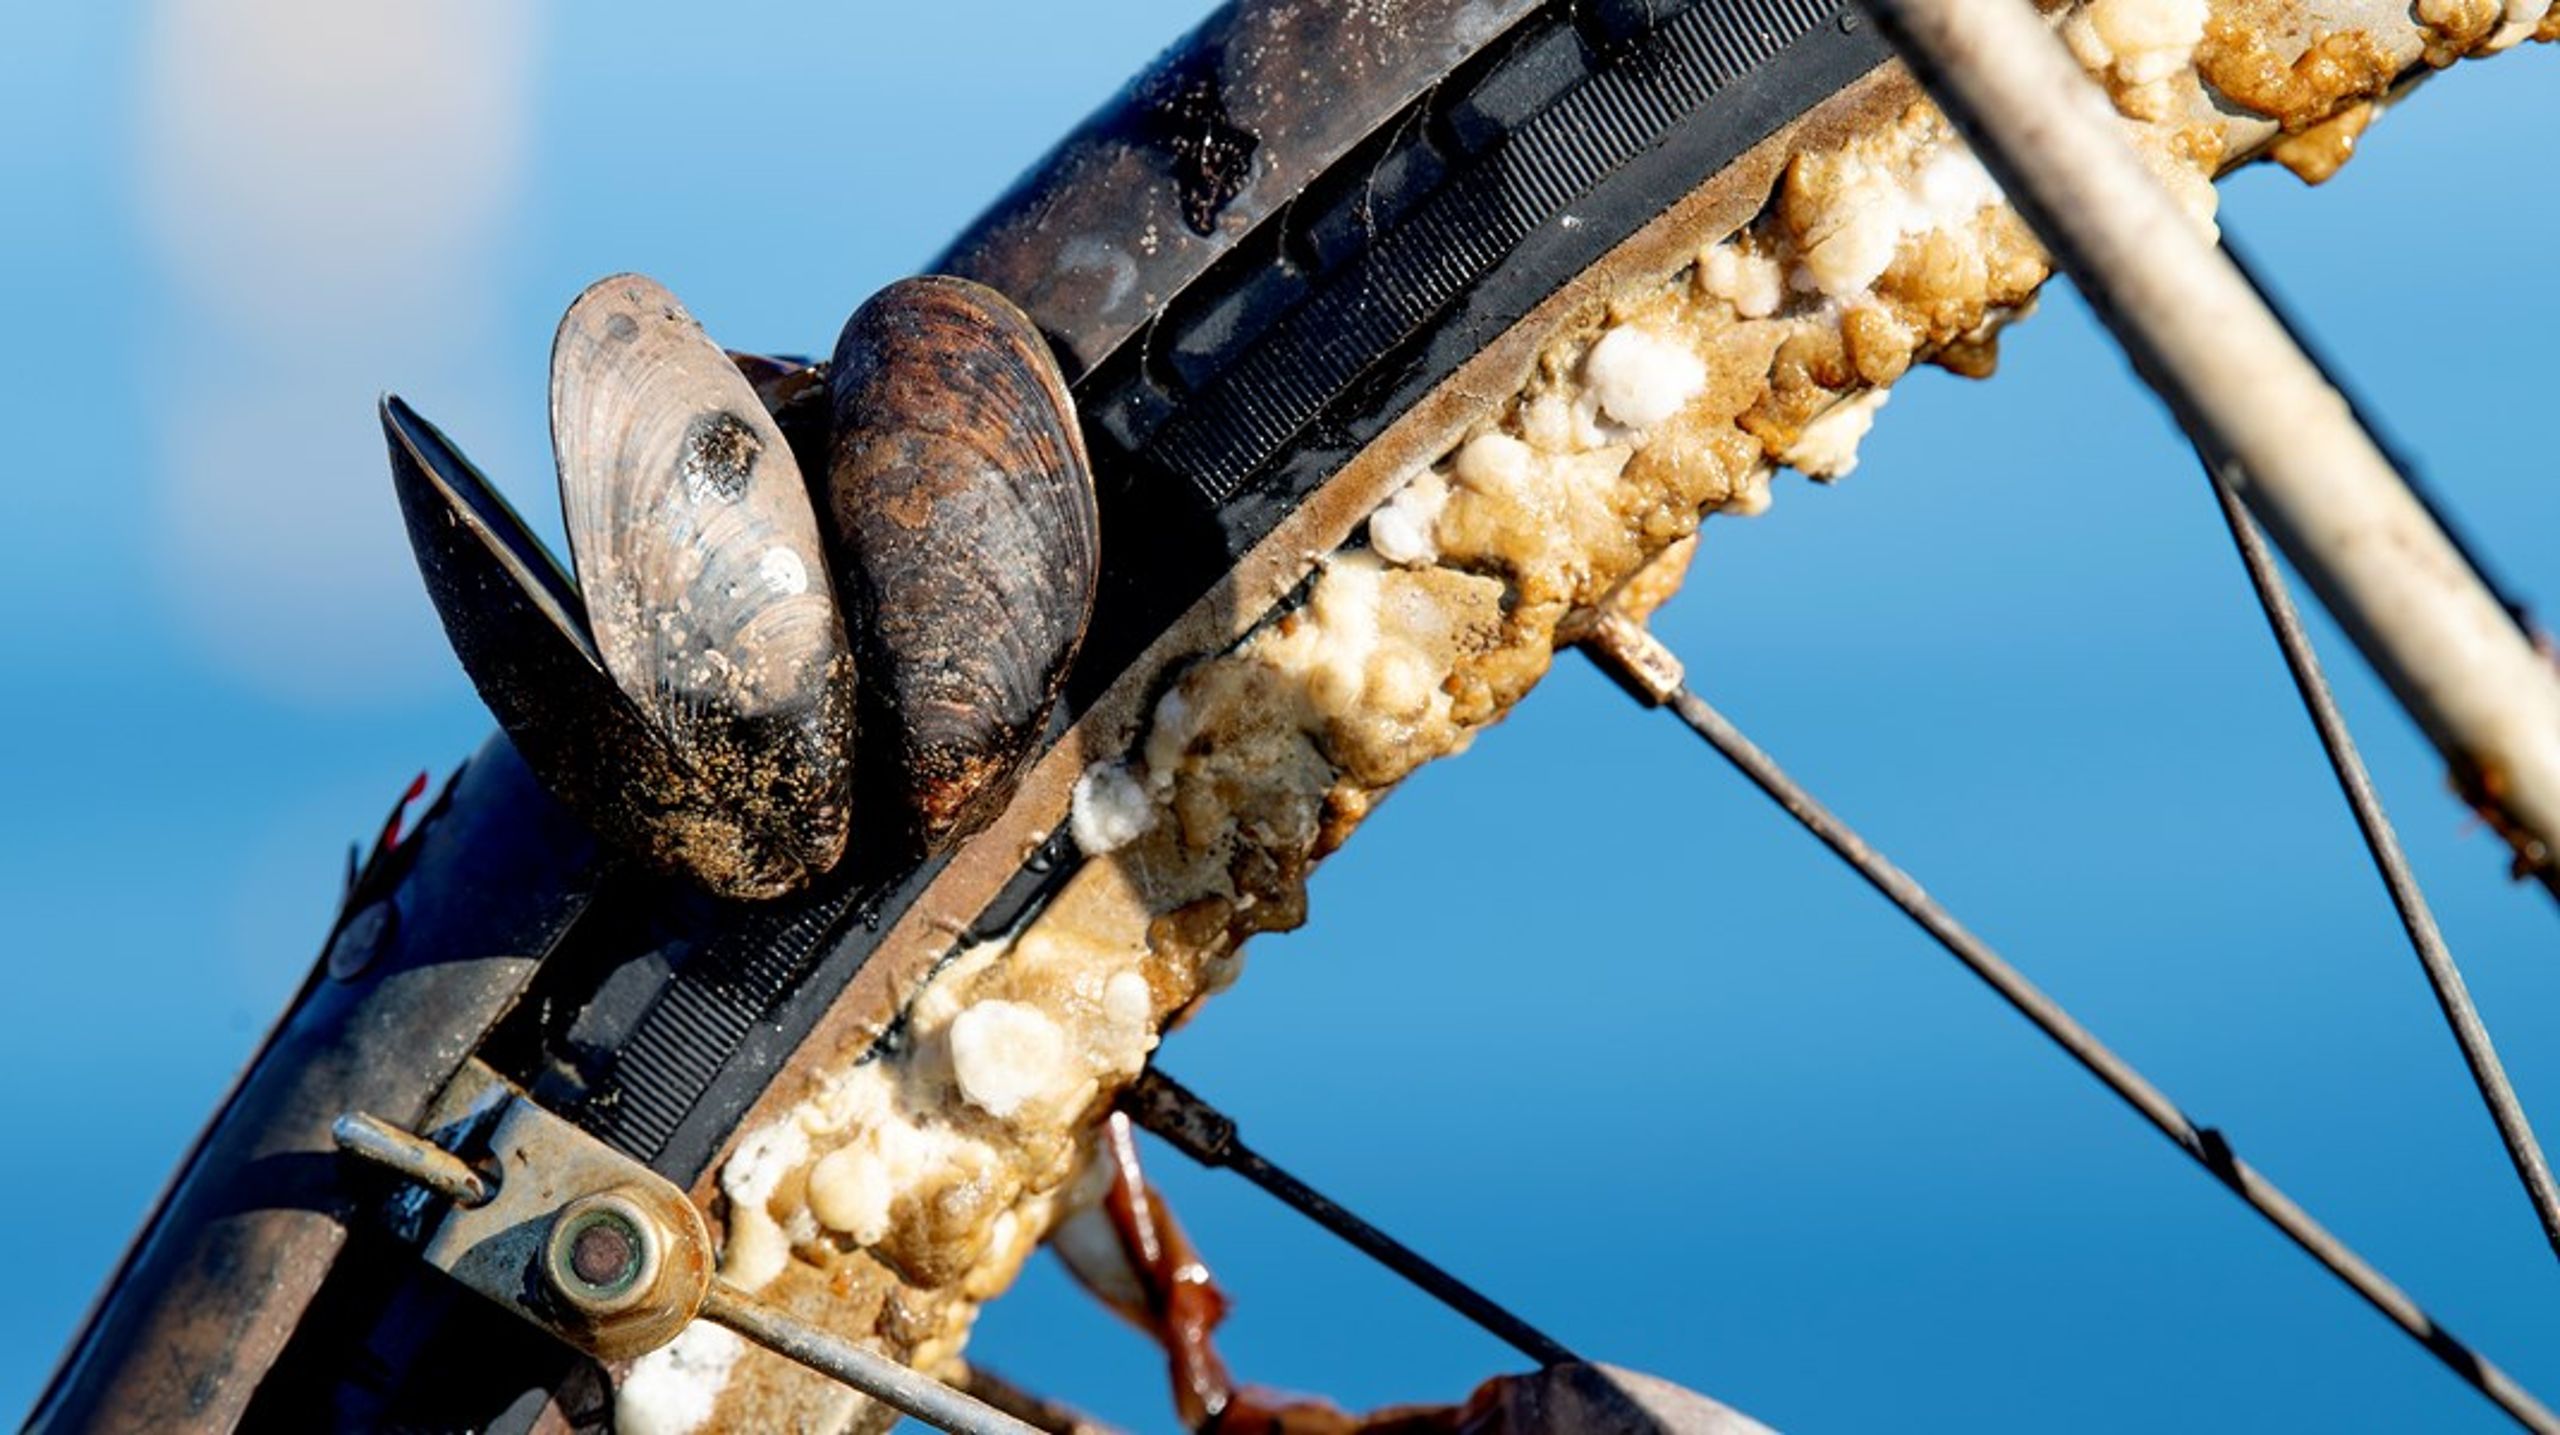 Blåmuslingefiskere har tjent godt på at have monopol over hjertemuslingefiskeriet.&nbsp;Men nu bør favorisering af blåmuslingefiskerne stoppe, skriver Reinhardt Schmidt.